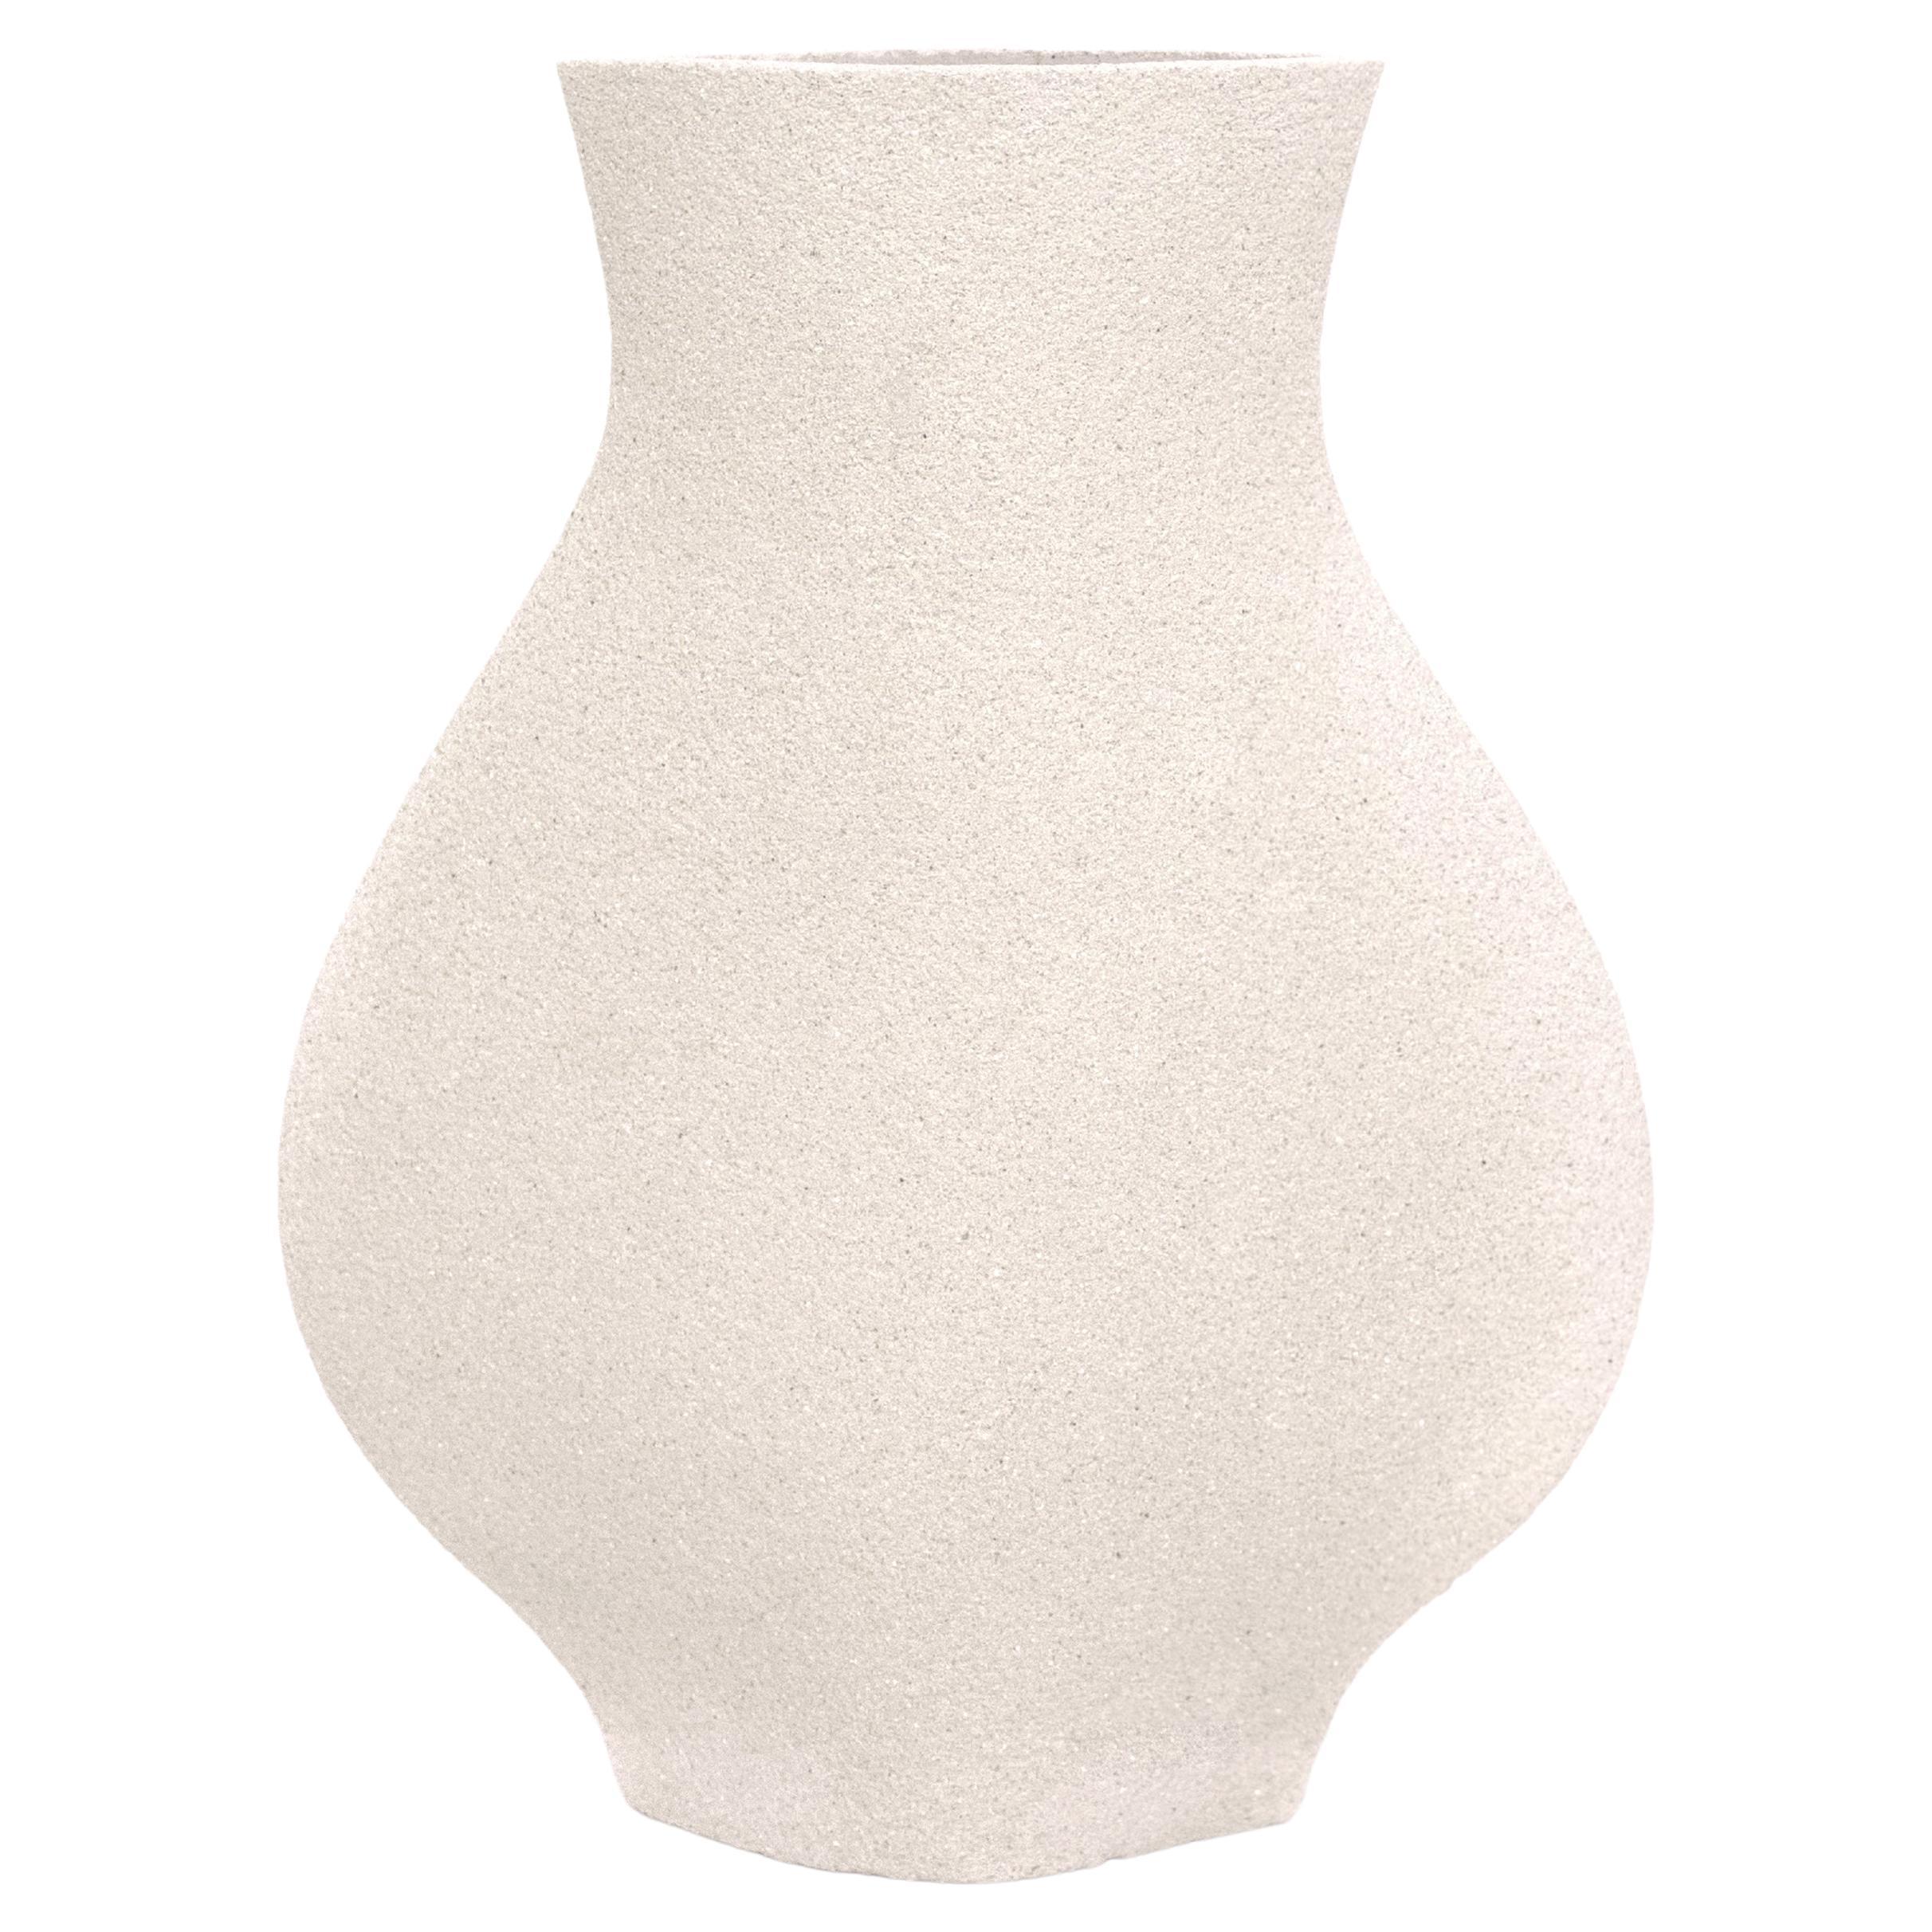 Vase en forme de jarre du 21e siècle en céramique blanche, fabriqué à la main en France